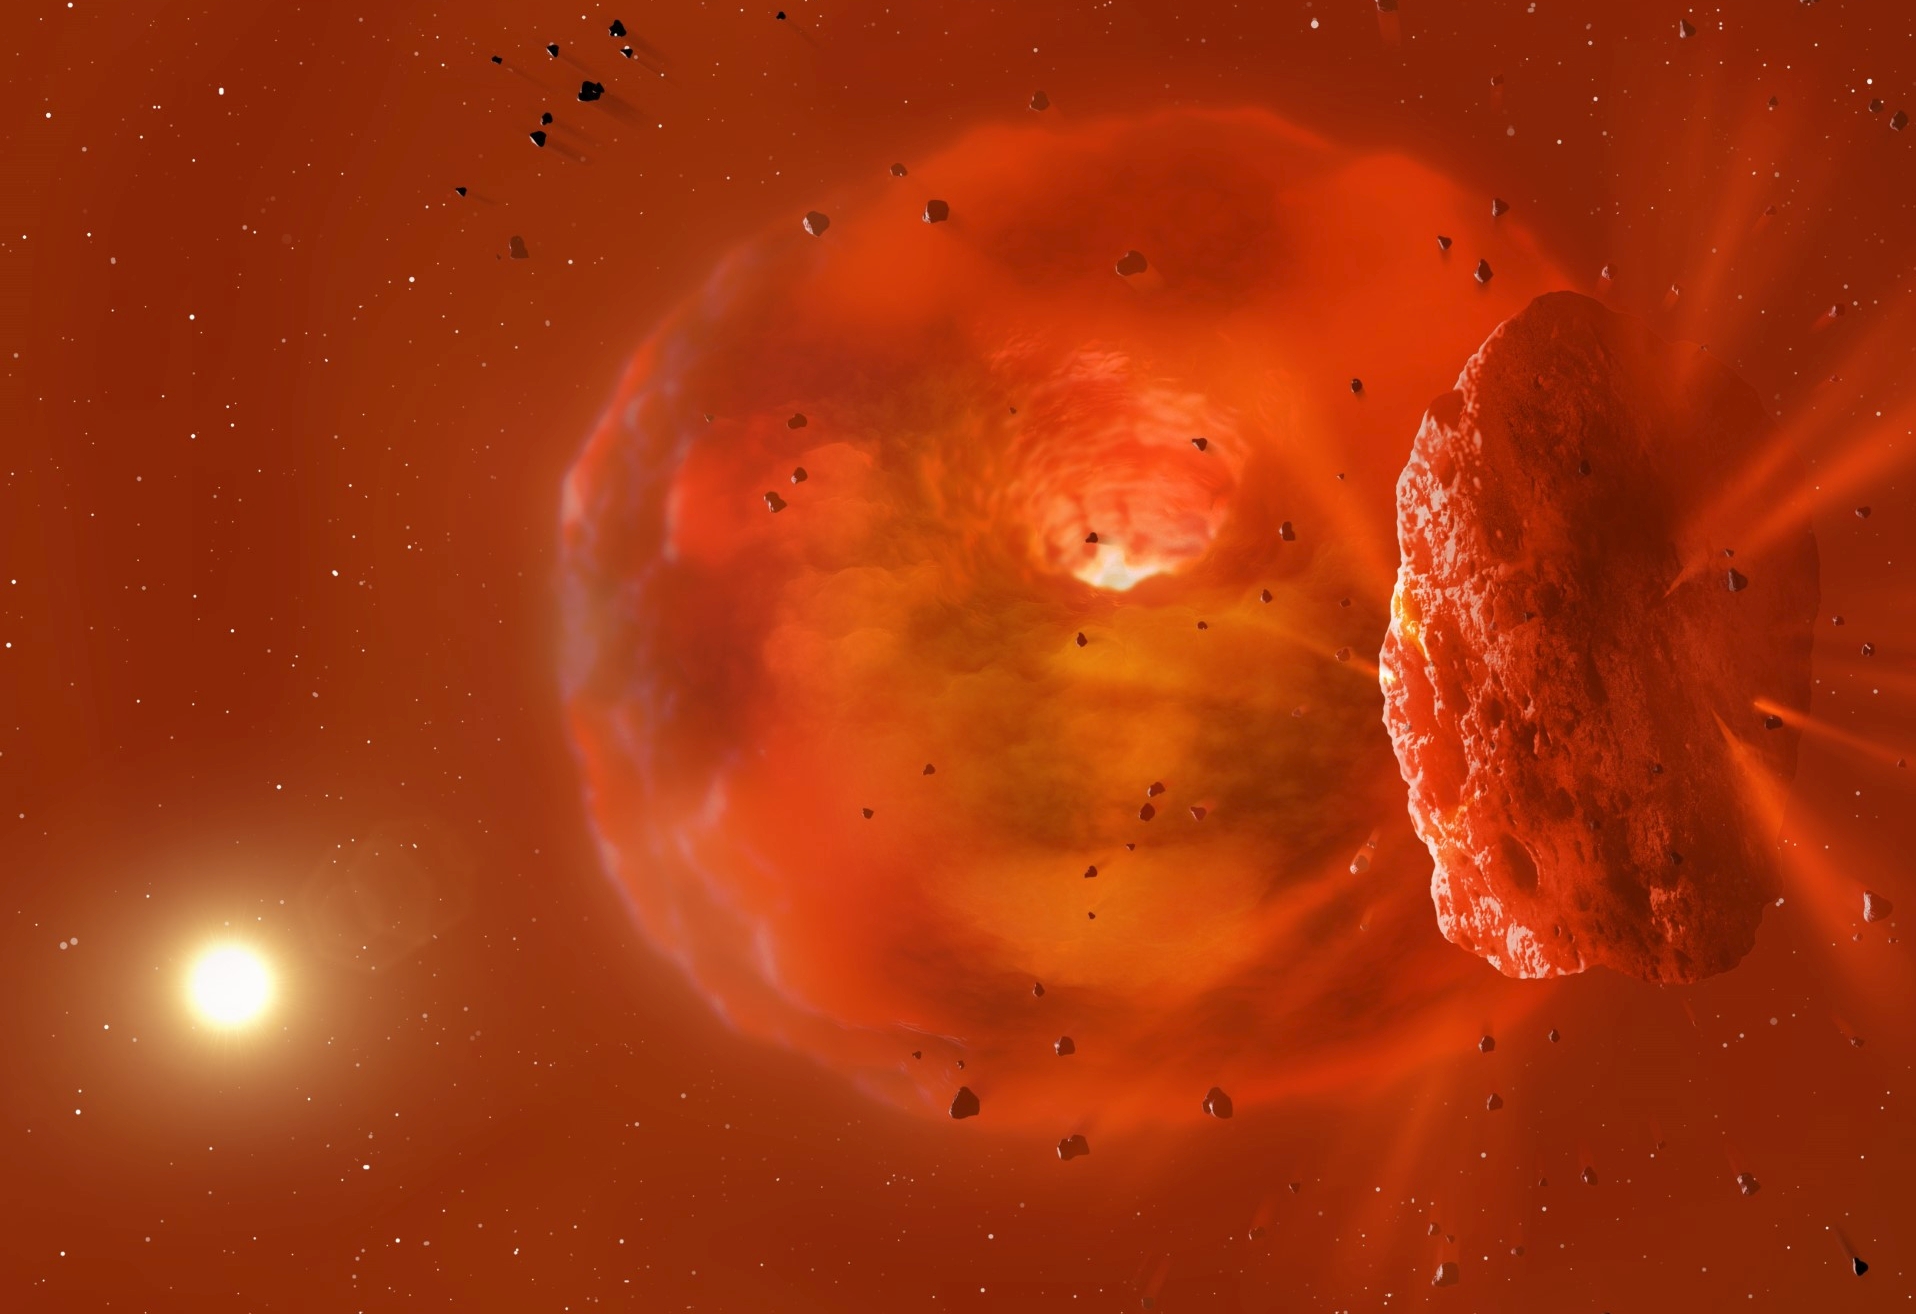 Διάστημα: Τηλεσκόπιο είδε για πρώτη φορά δύο πλανήτες να συγκρούονται